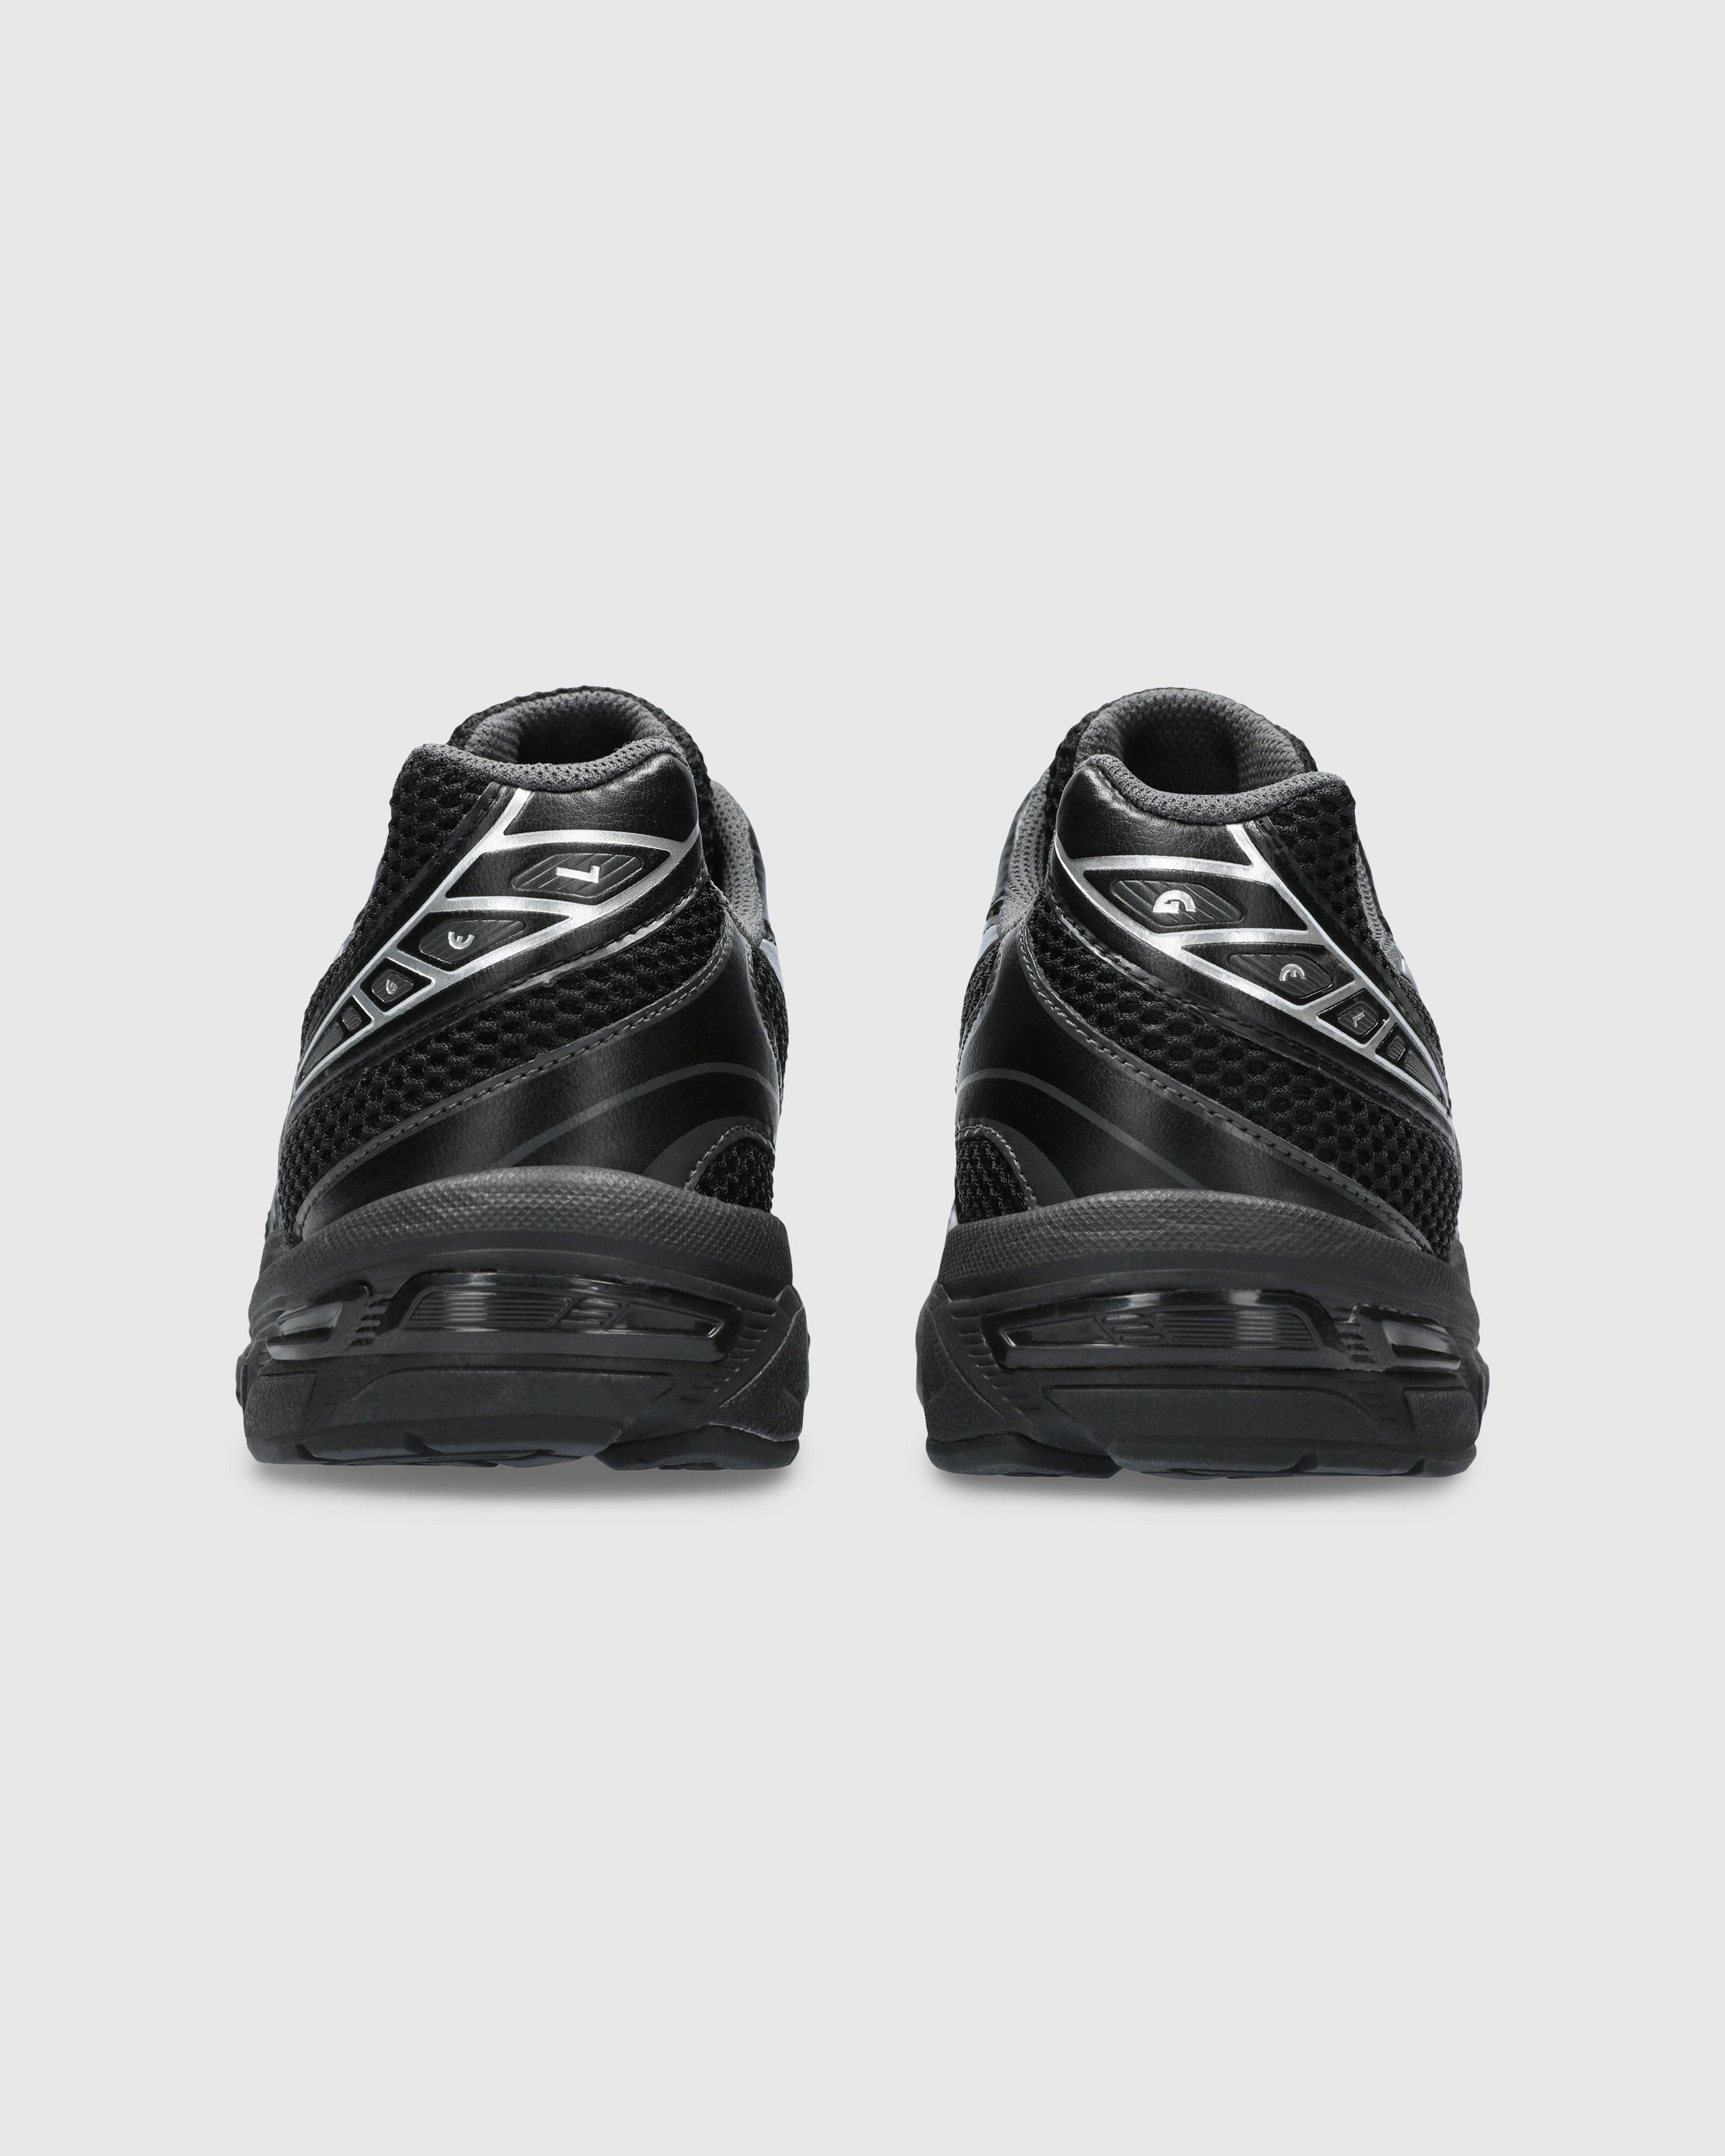 asics - GEL-1130 Black/Pure Silver - Footwear - Black - Image 5